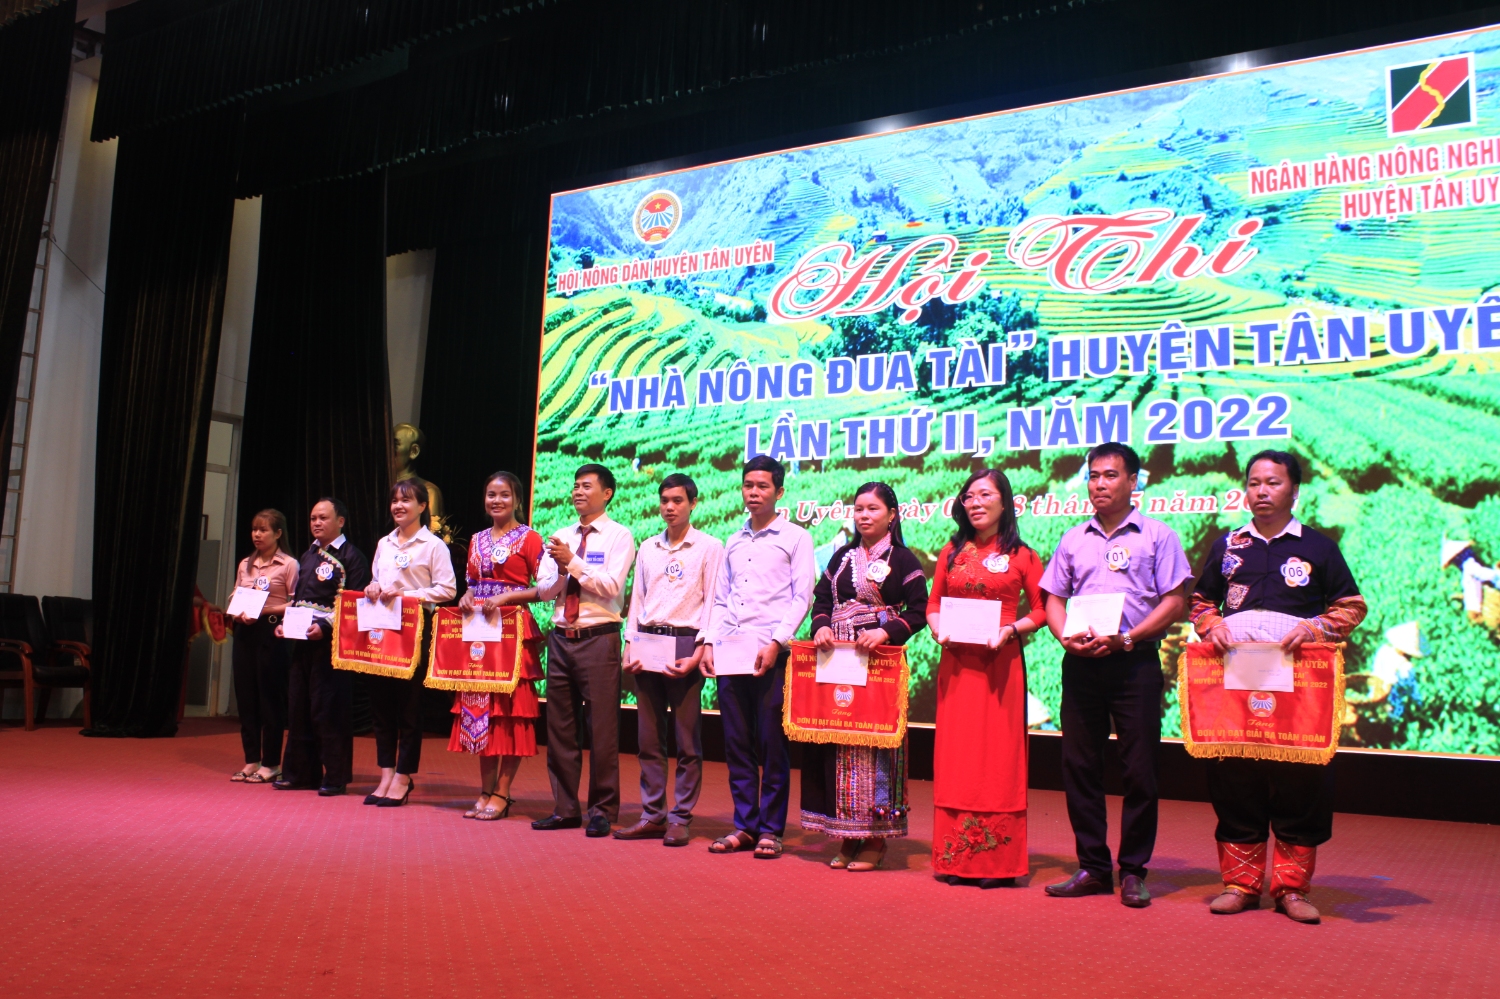 Đồng chí Đỗ Đình Cường - Chủ tịch Hội Nông dân huyện Tân Uyên trao giải cho các đội đạt thành tích tại Hội thi